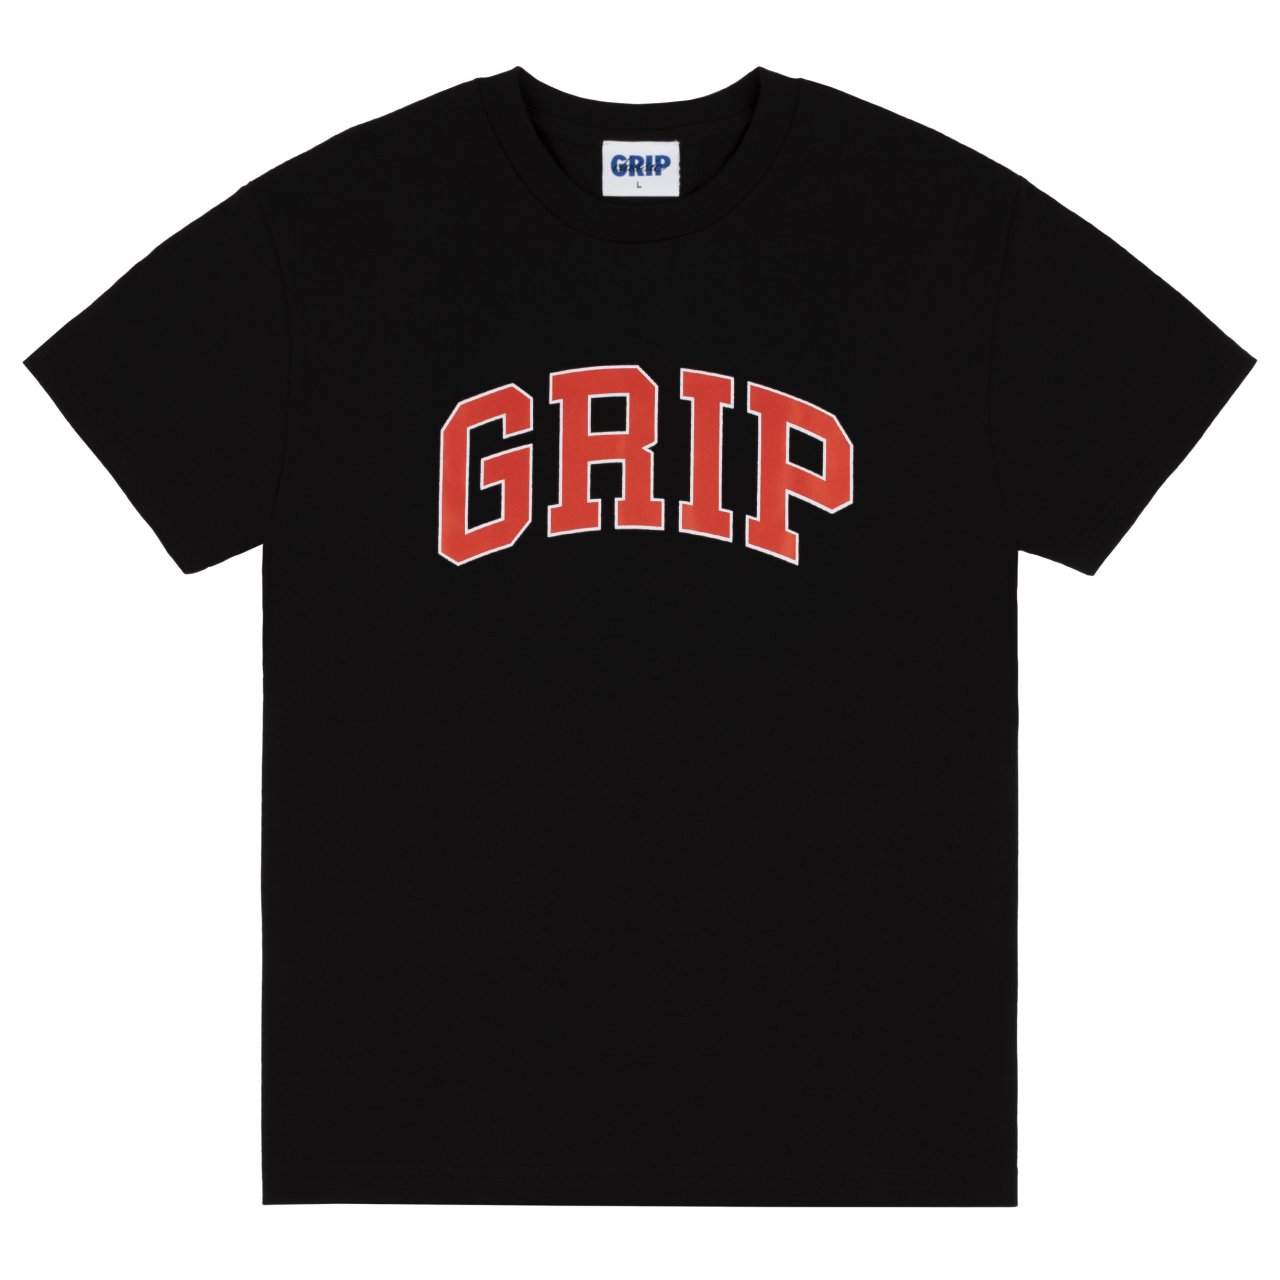 新品 CLASSIC GRIP Grip T-Shirt (BLACK) クラシックグリップ 半袖 Tシャツ ロゴ S/S Tee スケート 黒  ブラック - NEWJOKE ONLINE STORE